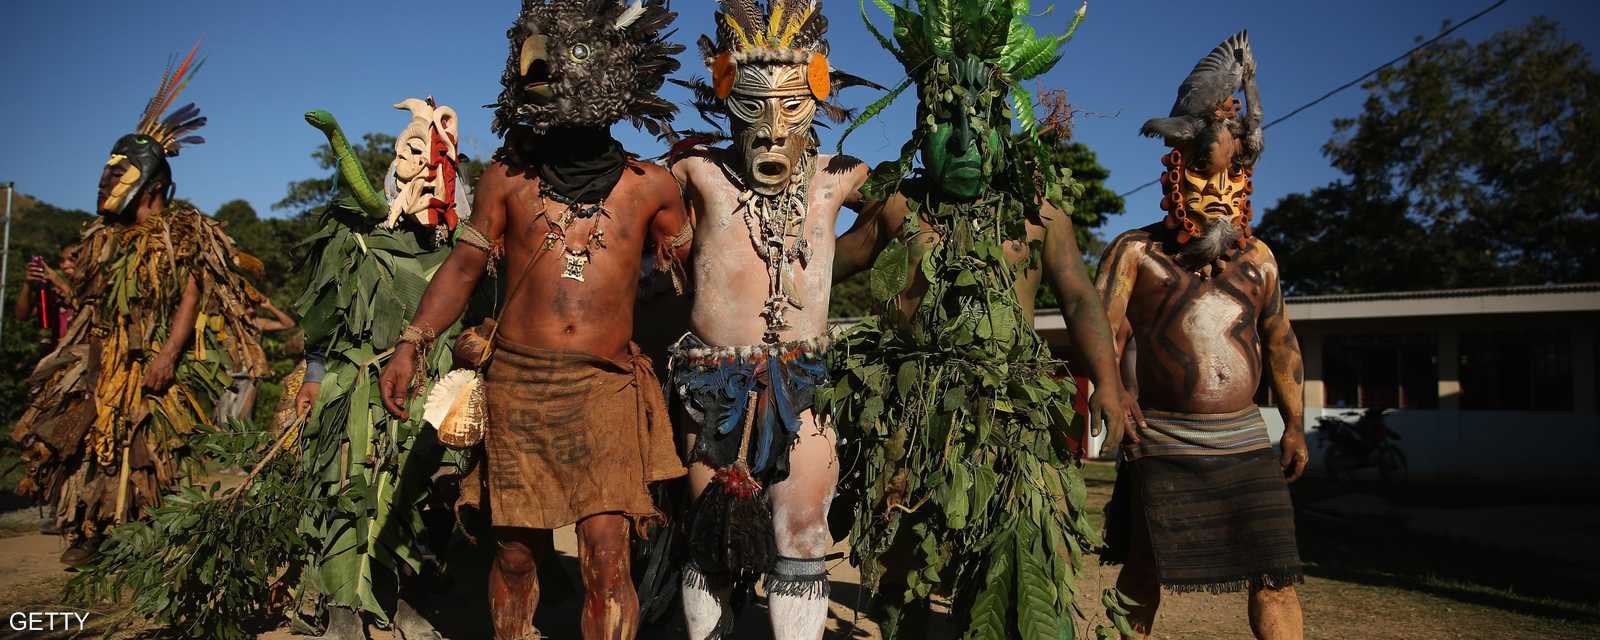 احتفال تراثي شعبي من أهم الاحتفالات التراثية في كوستاريكا